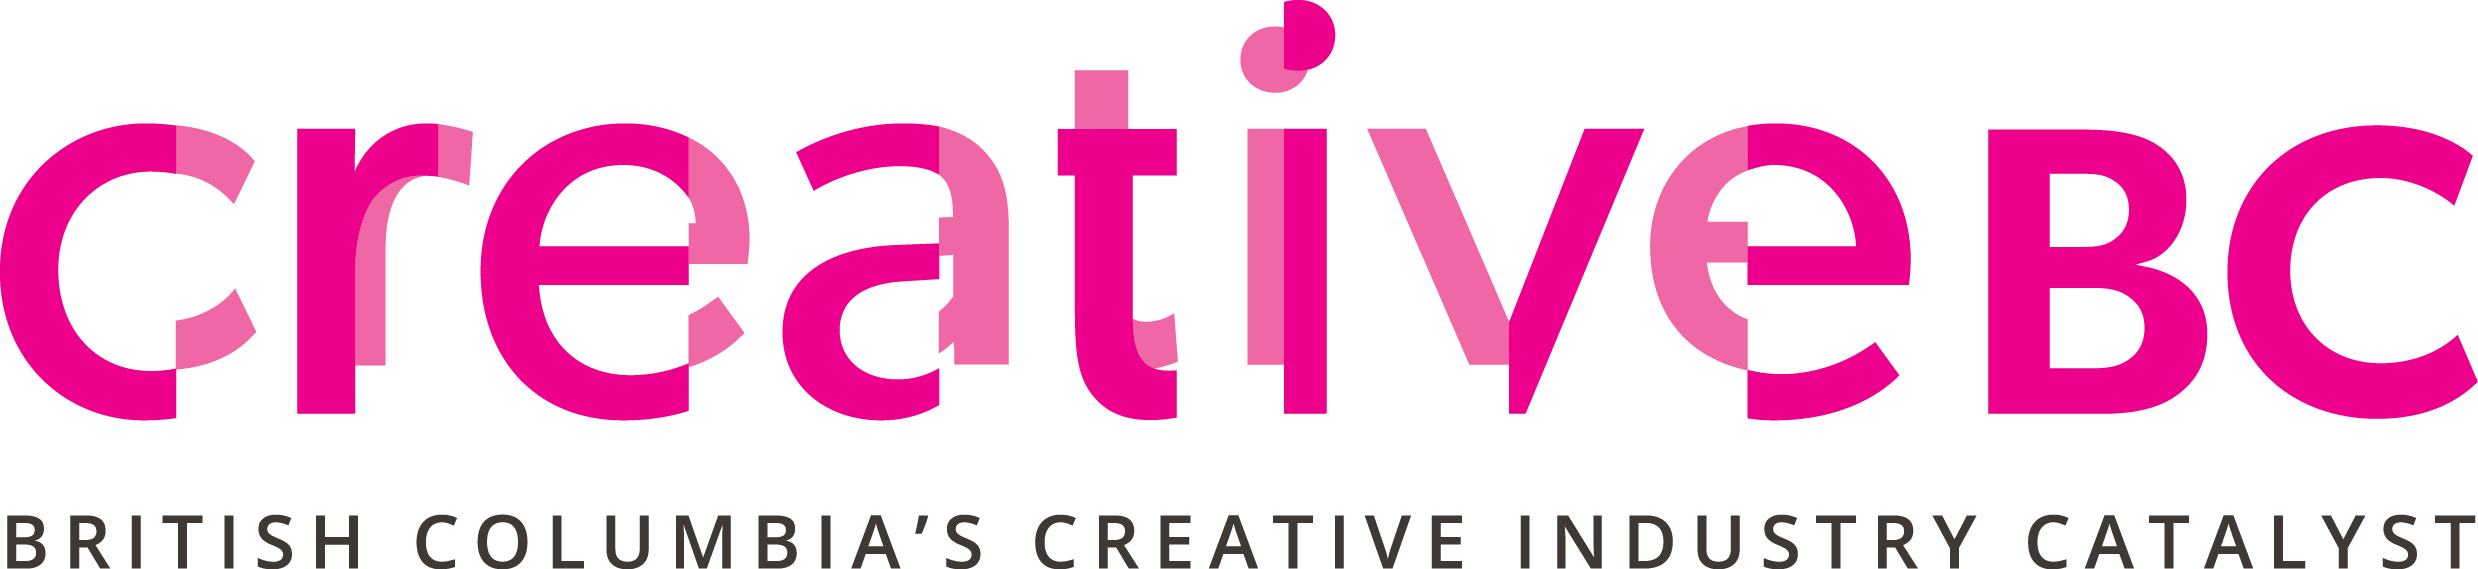 creative bc logo.png